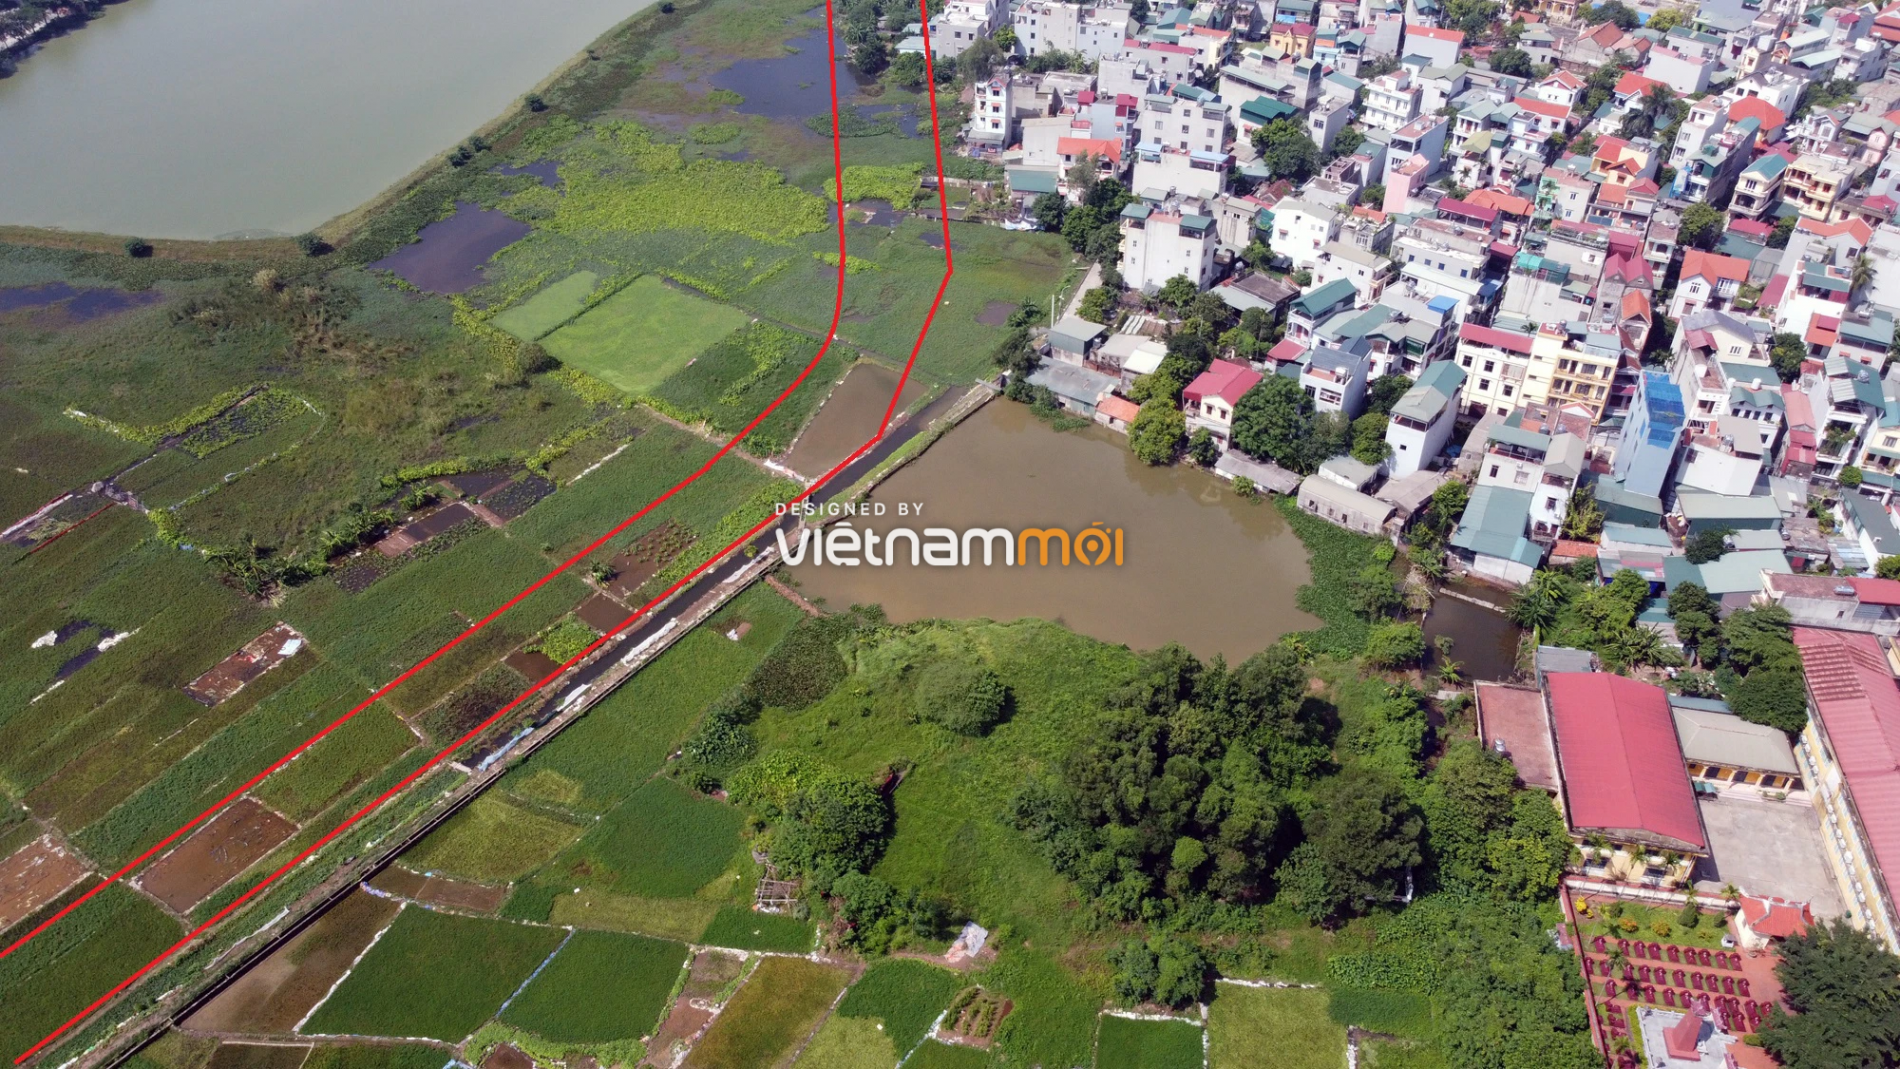 Những khu đất sắp thu hồi để mở đường ở xã Ngọc Hồi, Thanh Trì, Hà Nội (phần 2) - Ảnh 12.